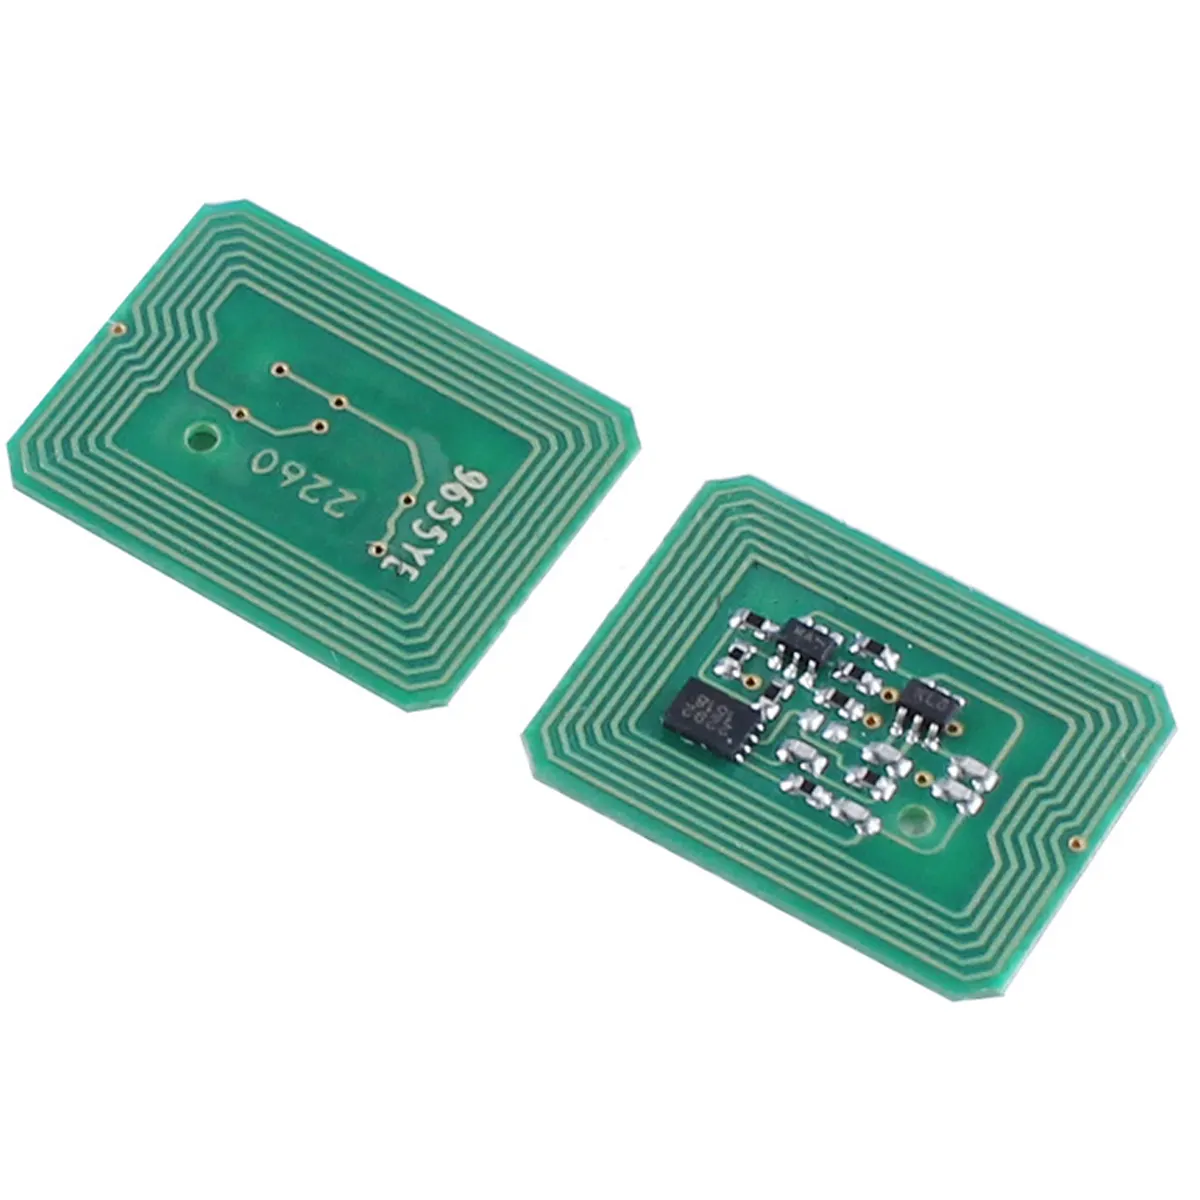 Chips OEM chips de cartucho para OKI-data C822A3 IMPRESORAS DE PÁGINA A COLOR chips impresora original/para ensamblaje de fusor OKI